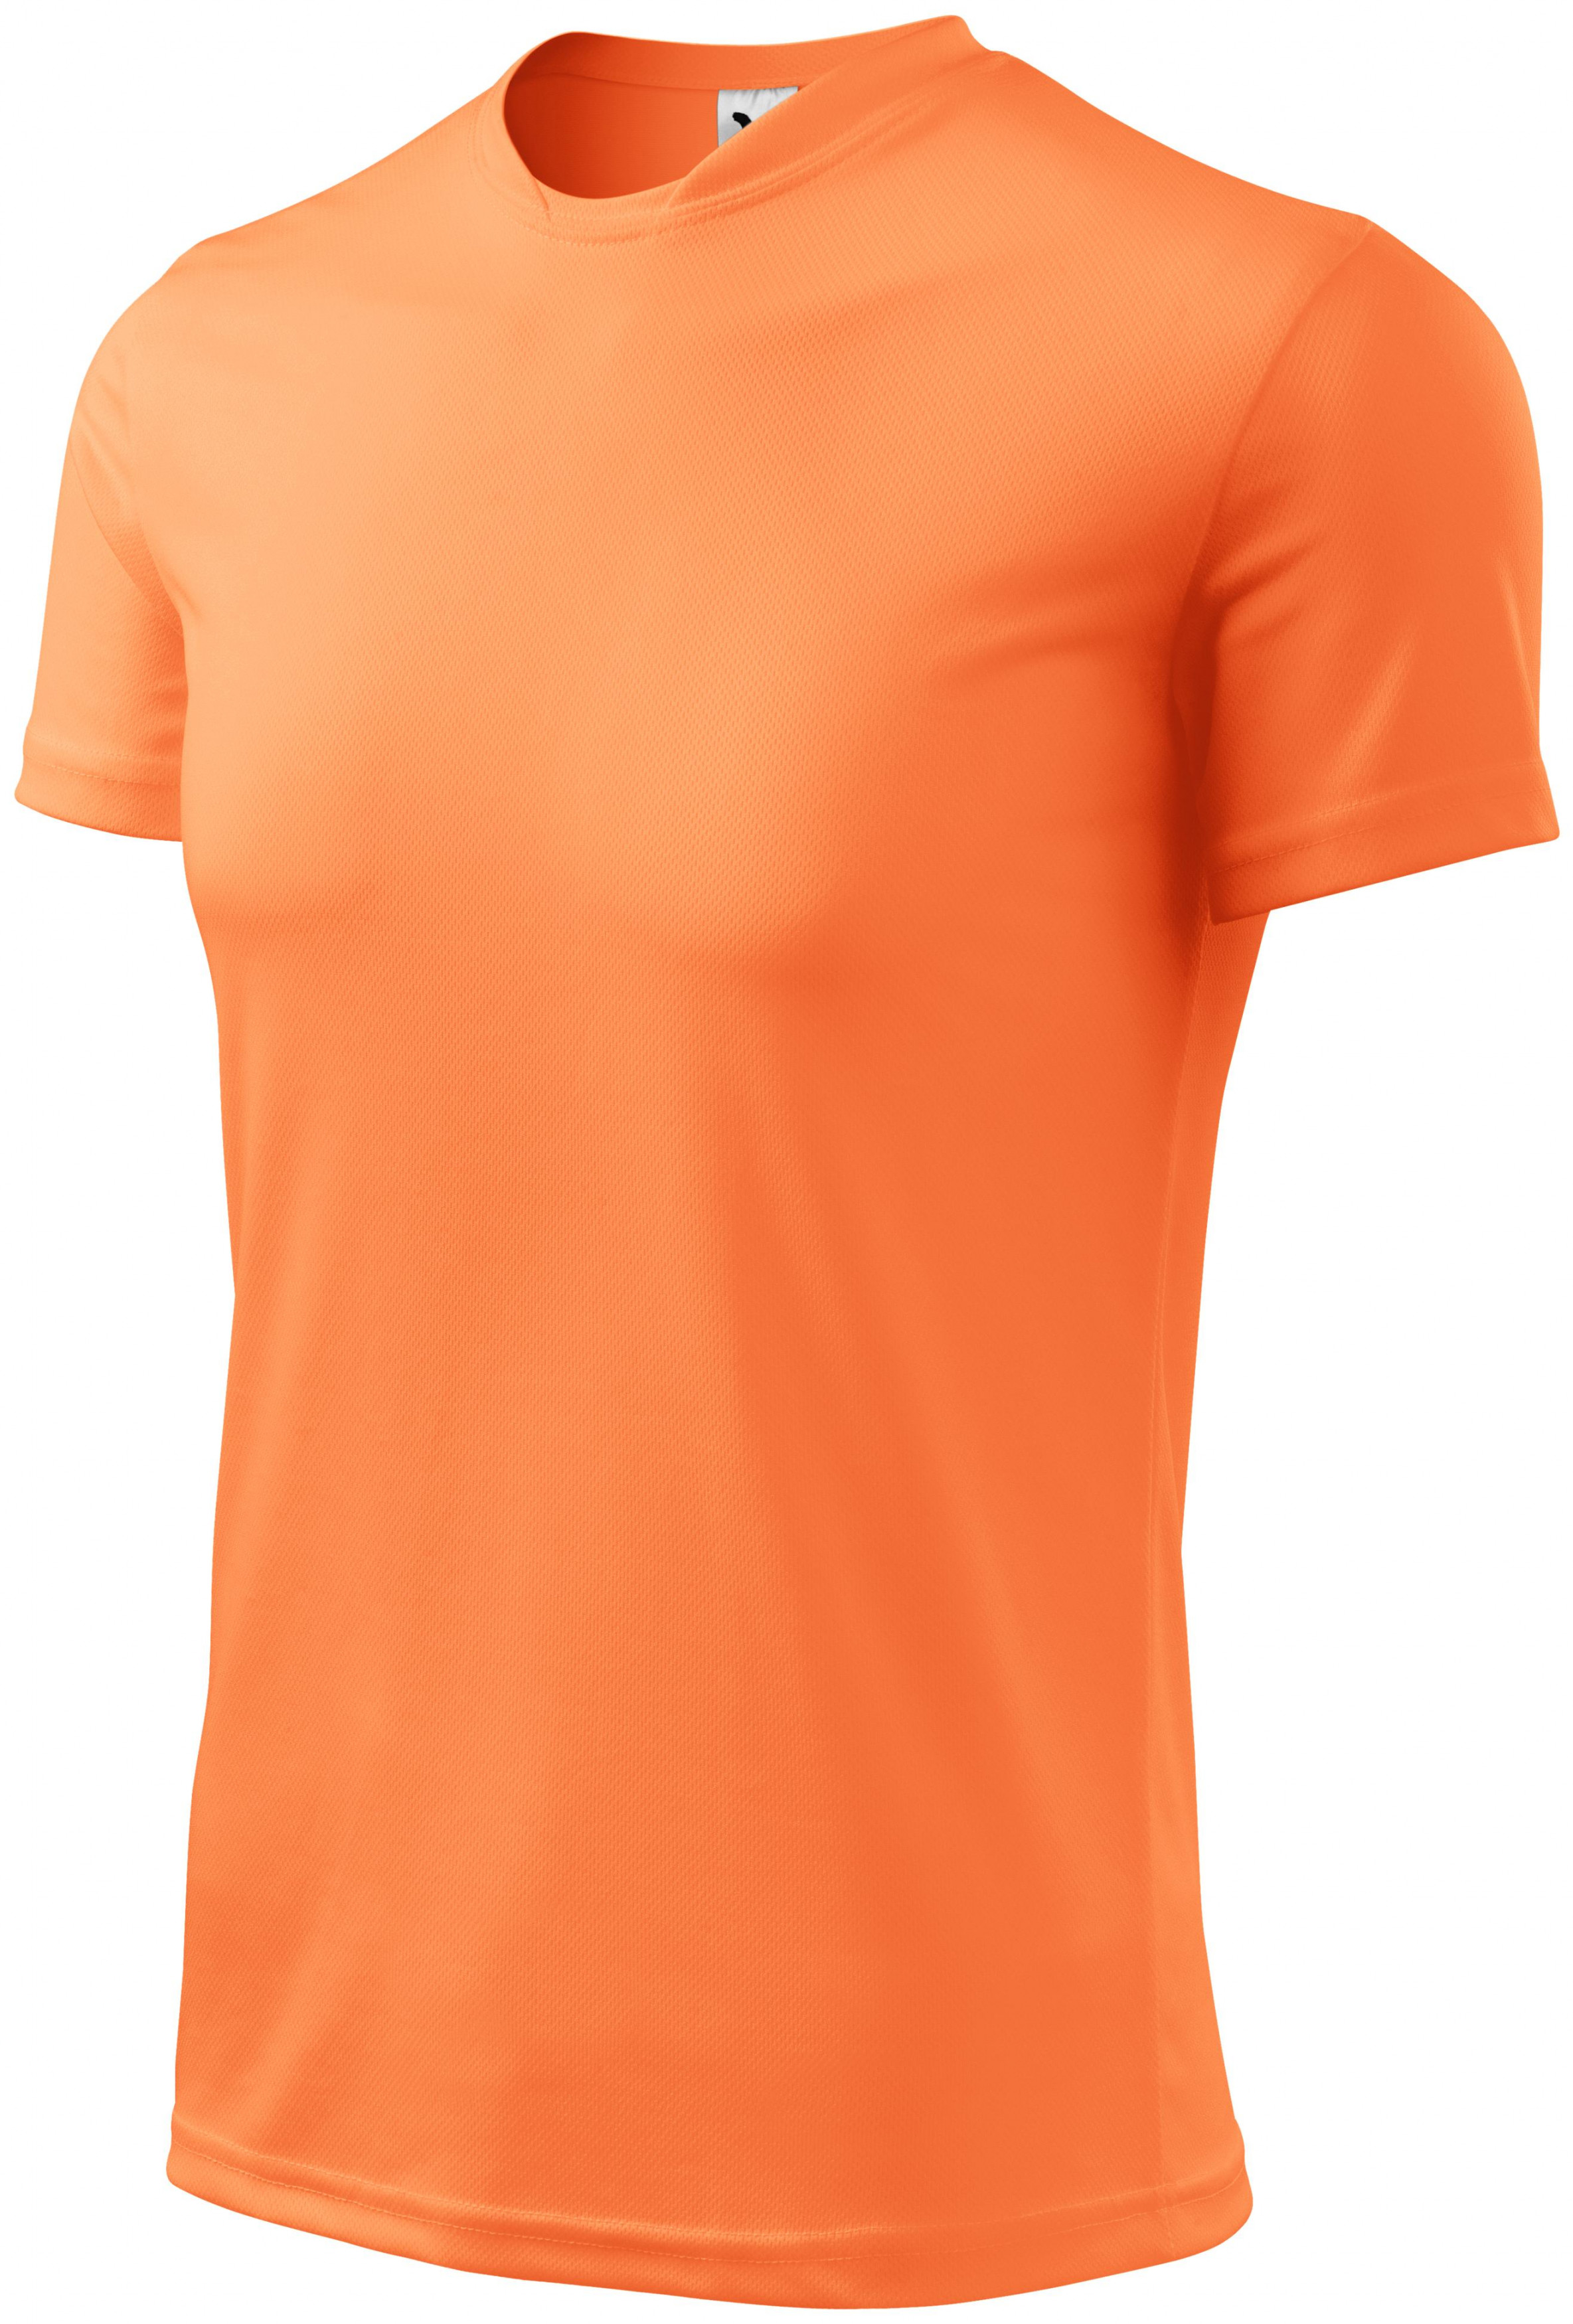 Športové tričko detské, neónová mandarinková, 146cm / 10rokov